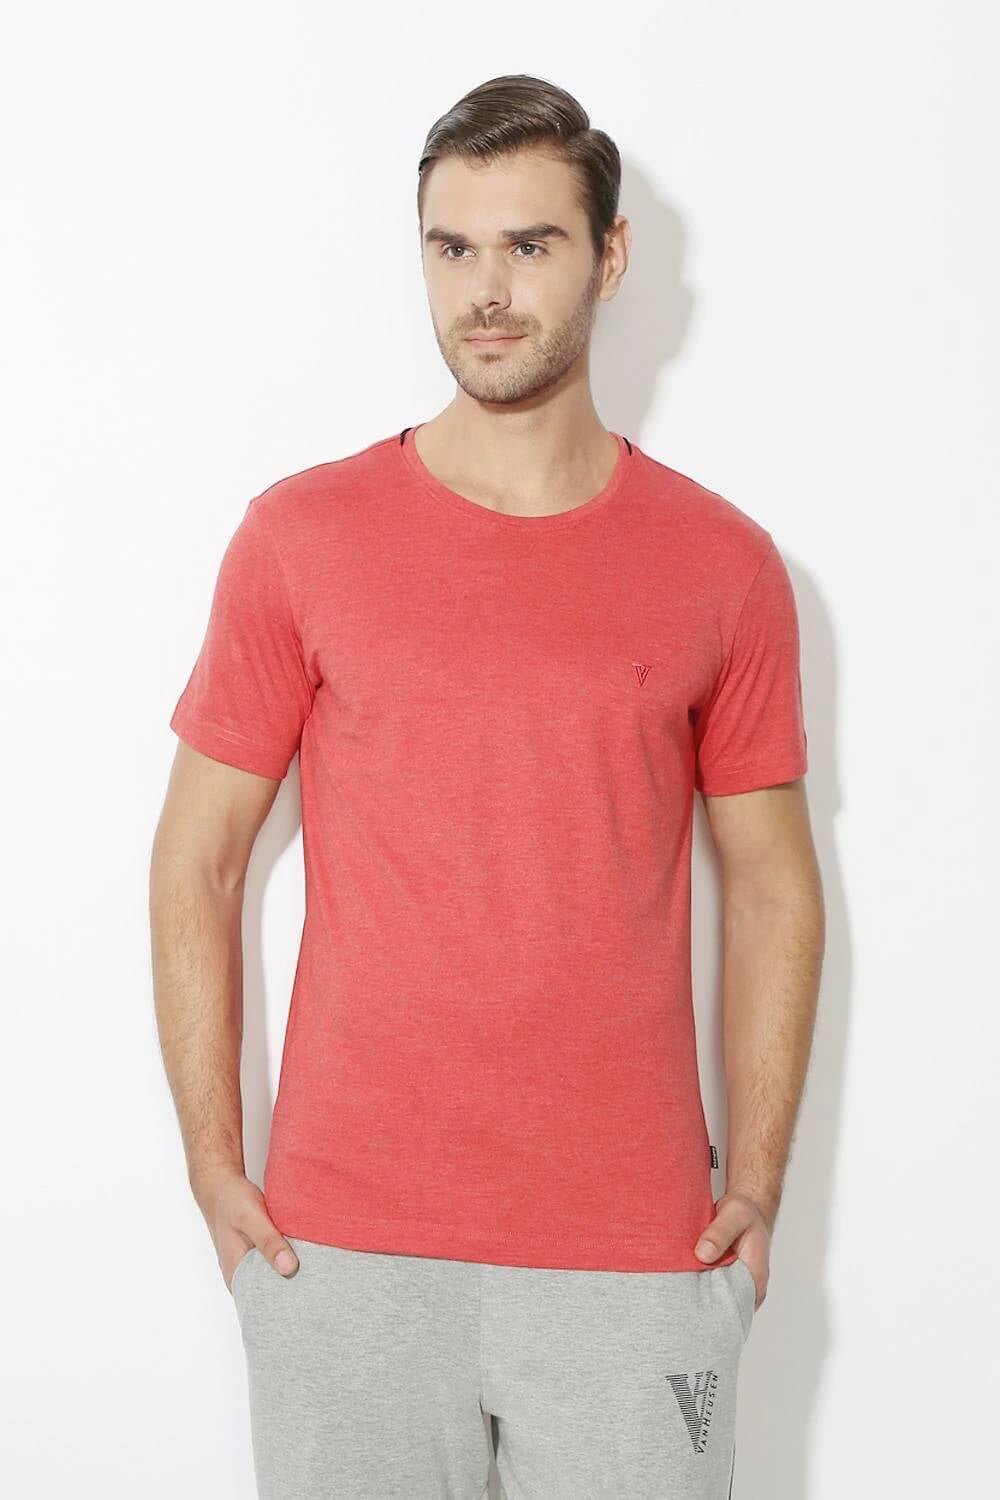 Van Heusen Brick Rust Tshirt for Men #60021